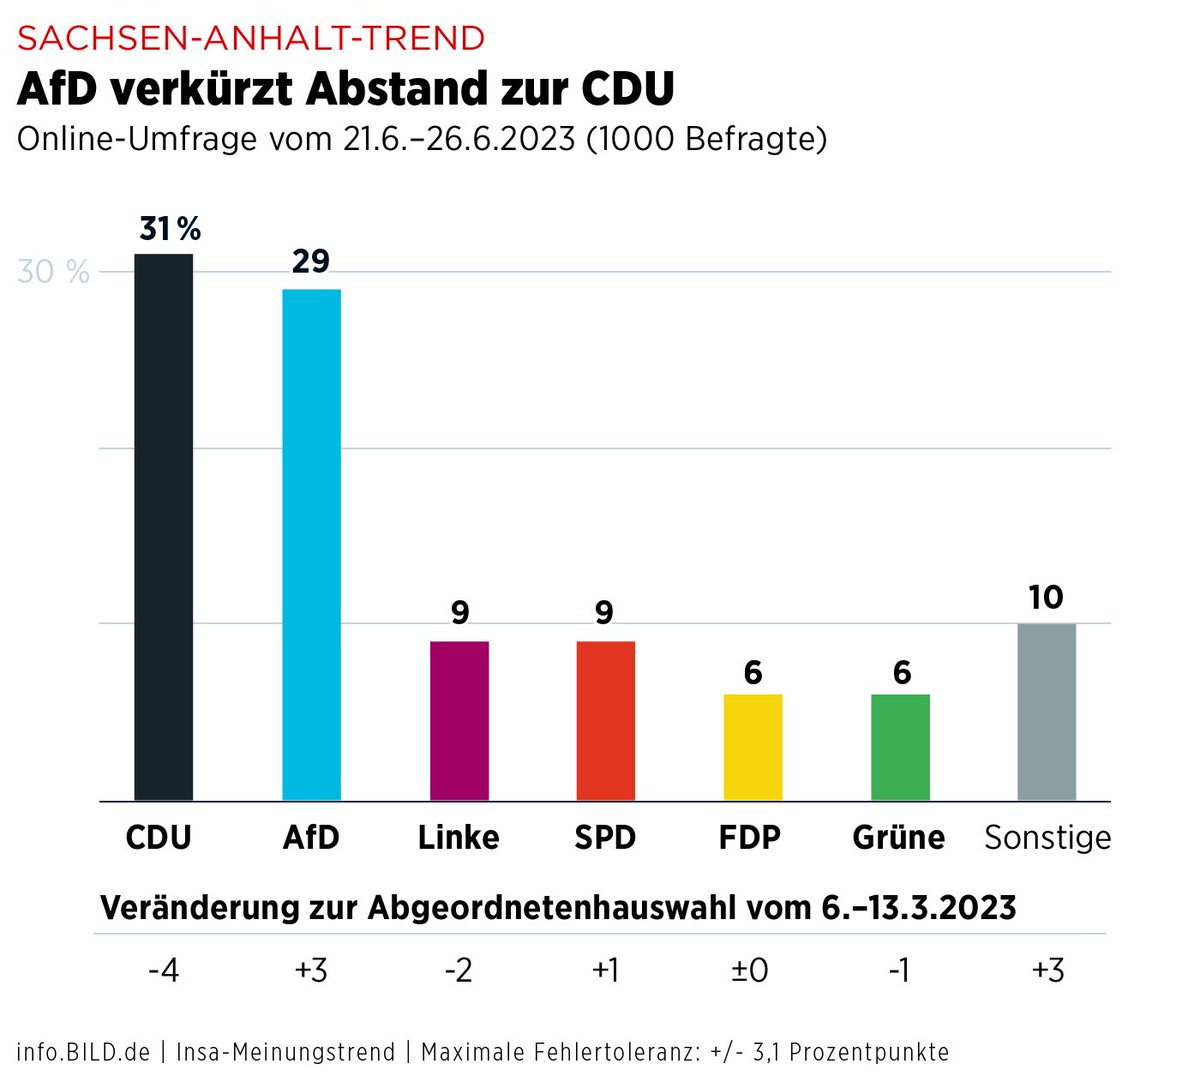 Nach dem #AfD-Triumph in #Sonneberg geht es auch in der Sonntagsfrage für Sachsen-Anhalt bergauf. Gut so!

💙🇩🇪